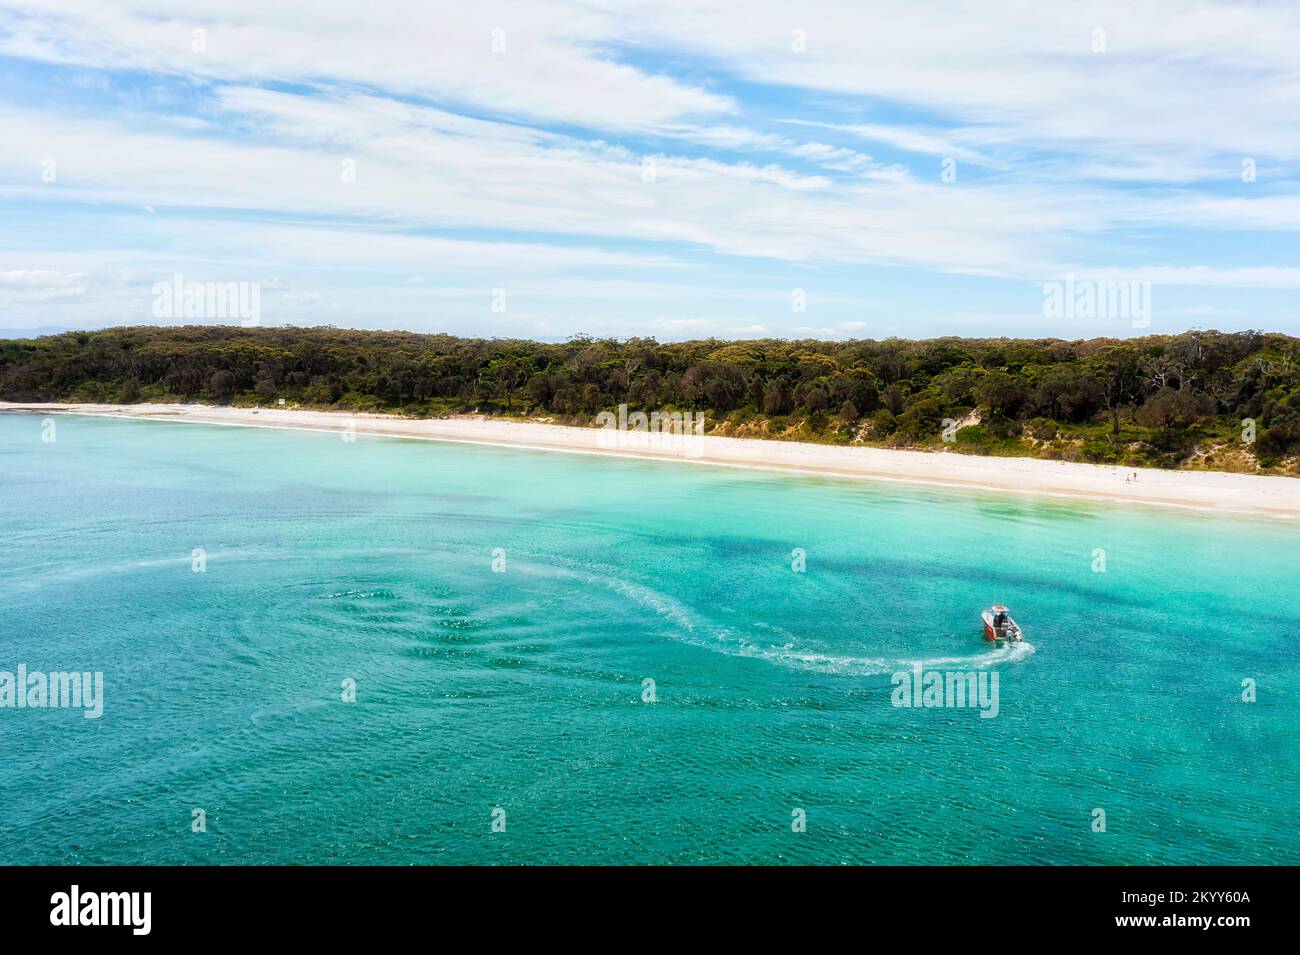 Pêche en petit bateau à moteur à long Beach dans la baie de Jervis, sur la côte Pacifique de l'Australie, avec du sable blanc et de l'eau émeraude. Banque D'Images